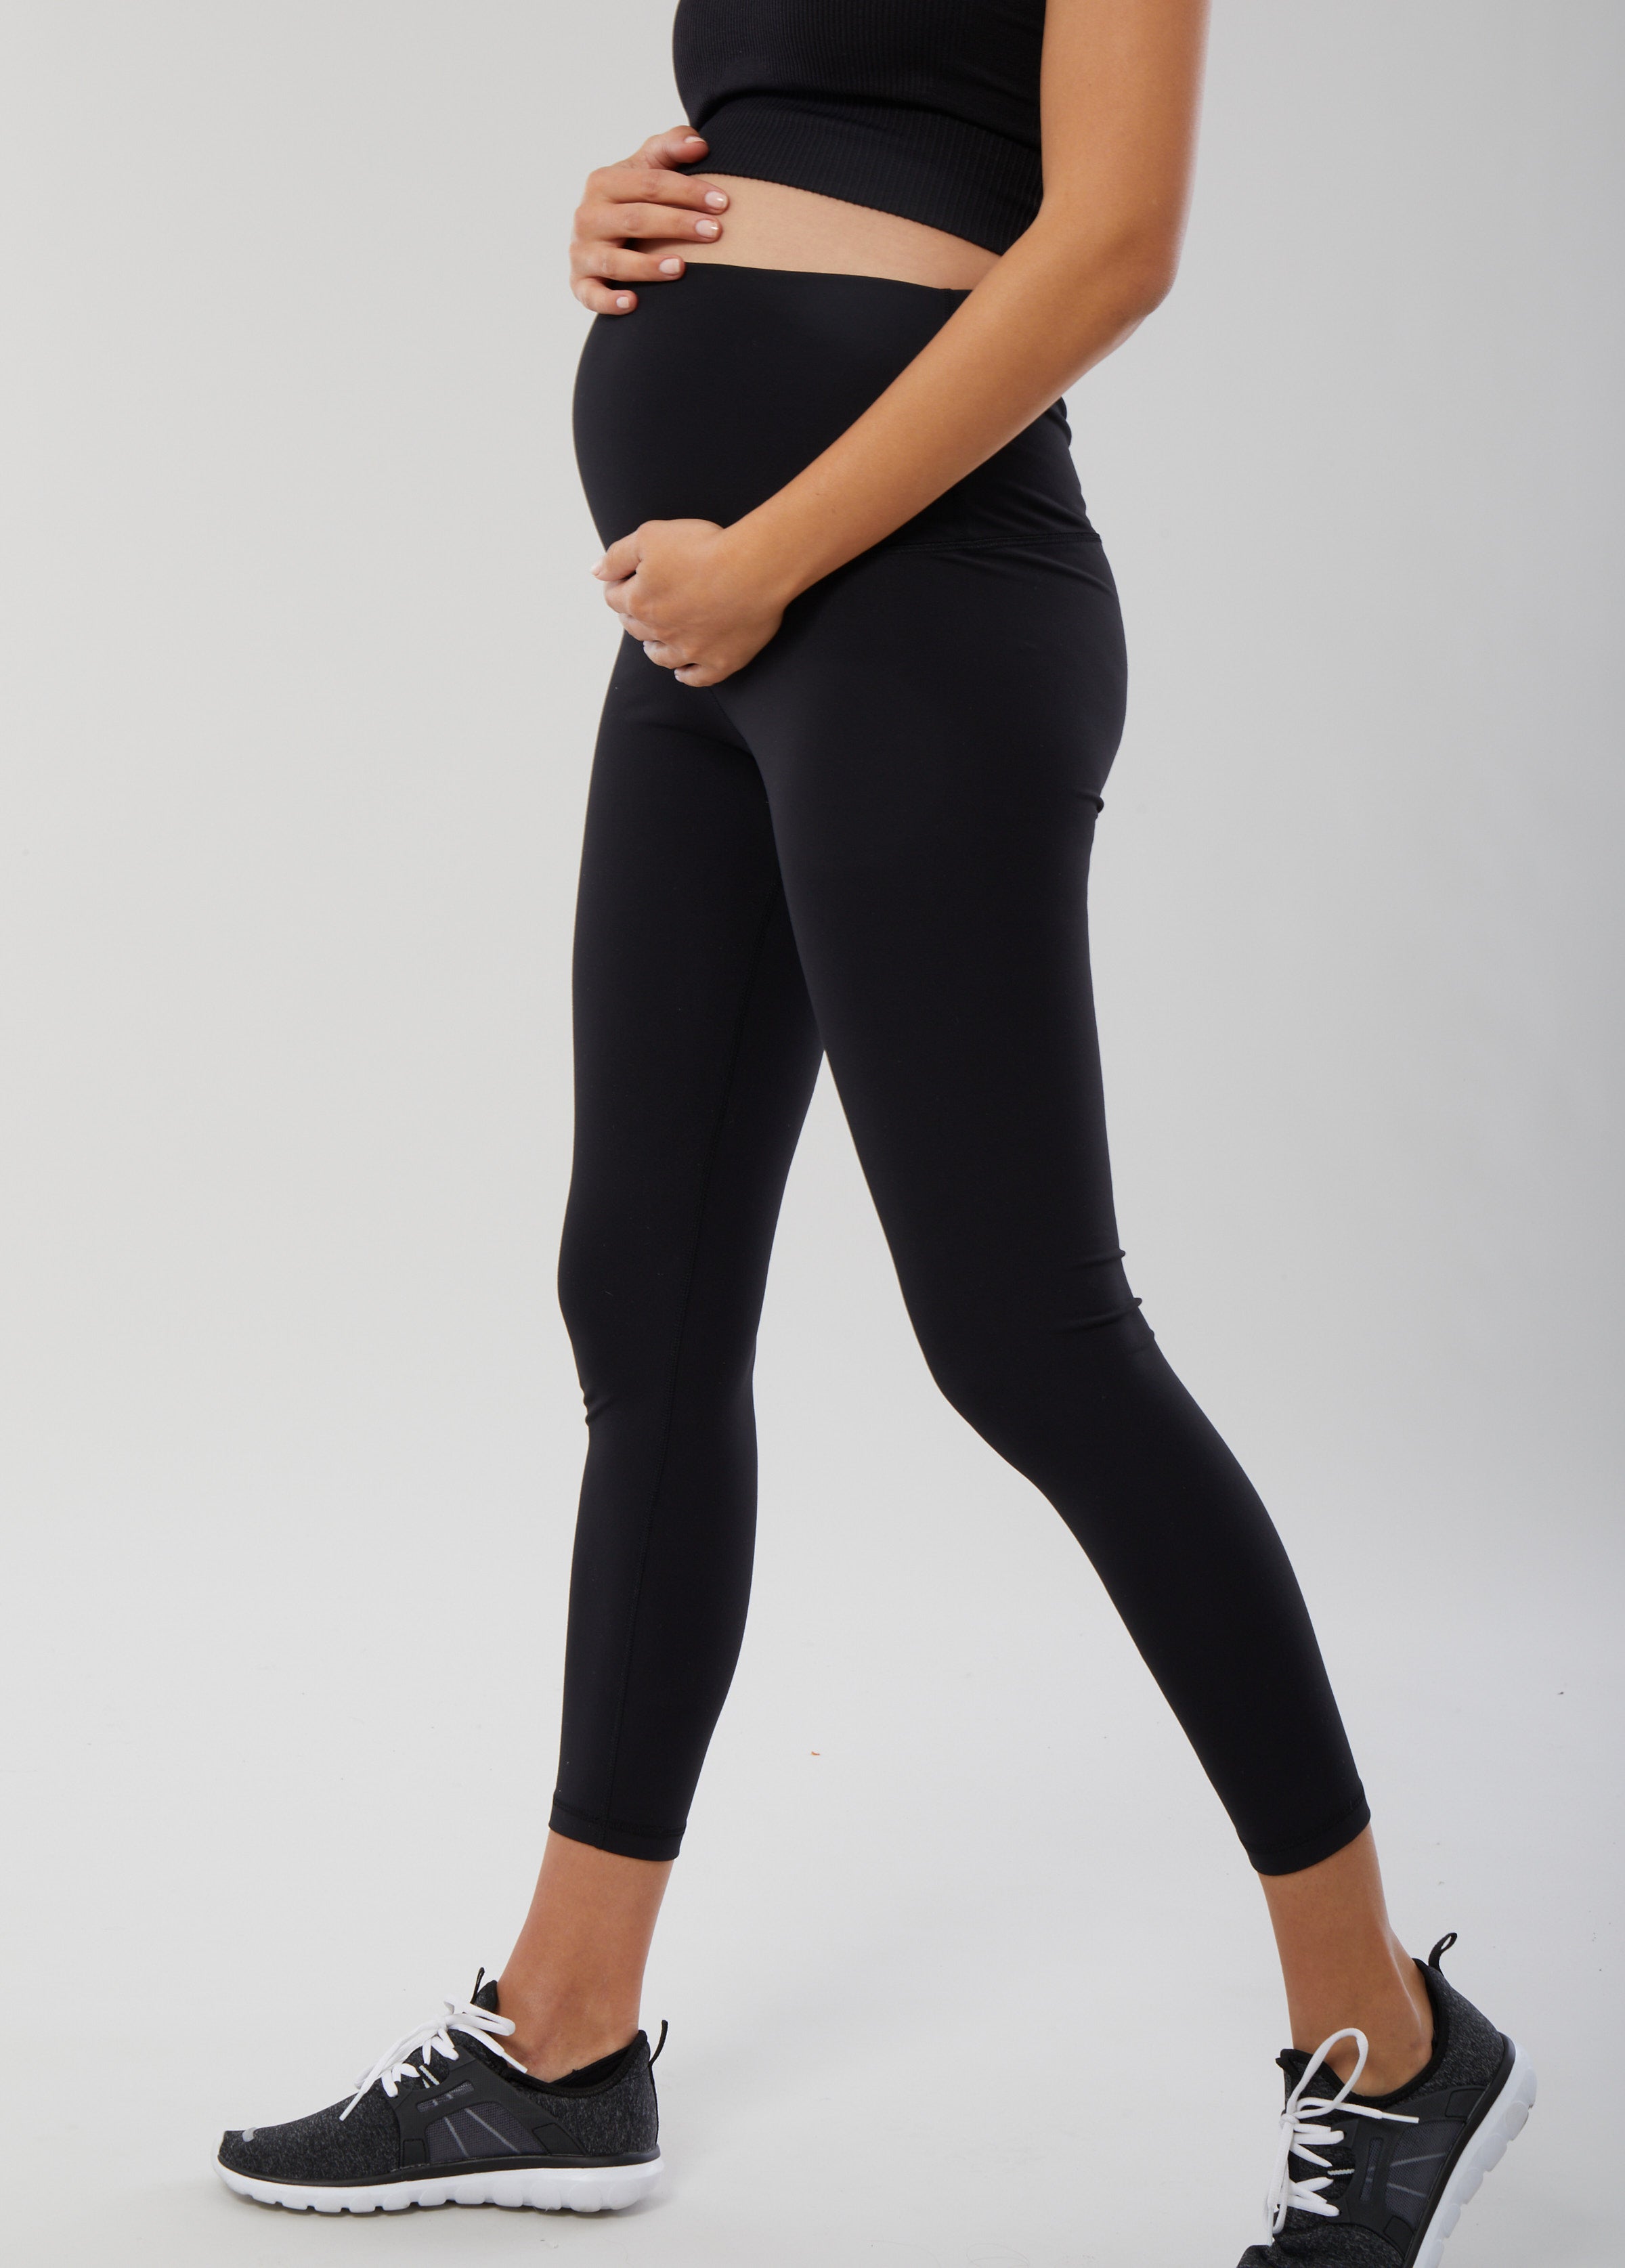 SRC Pregnancy Leggings Over Belly High Waisted Full Length Black